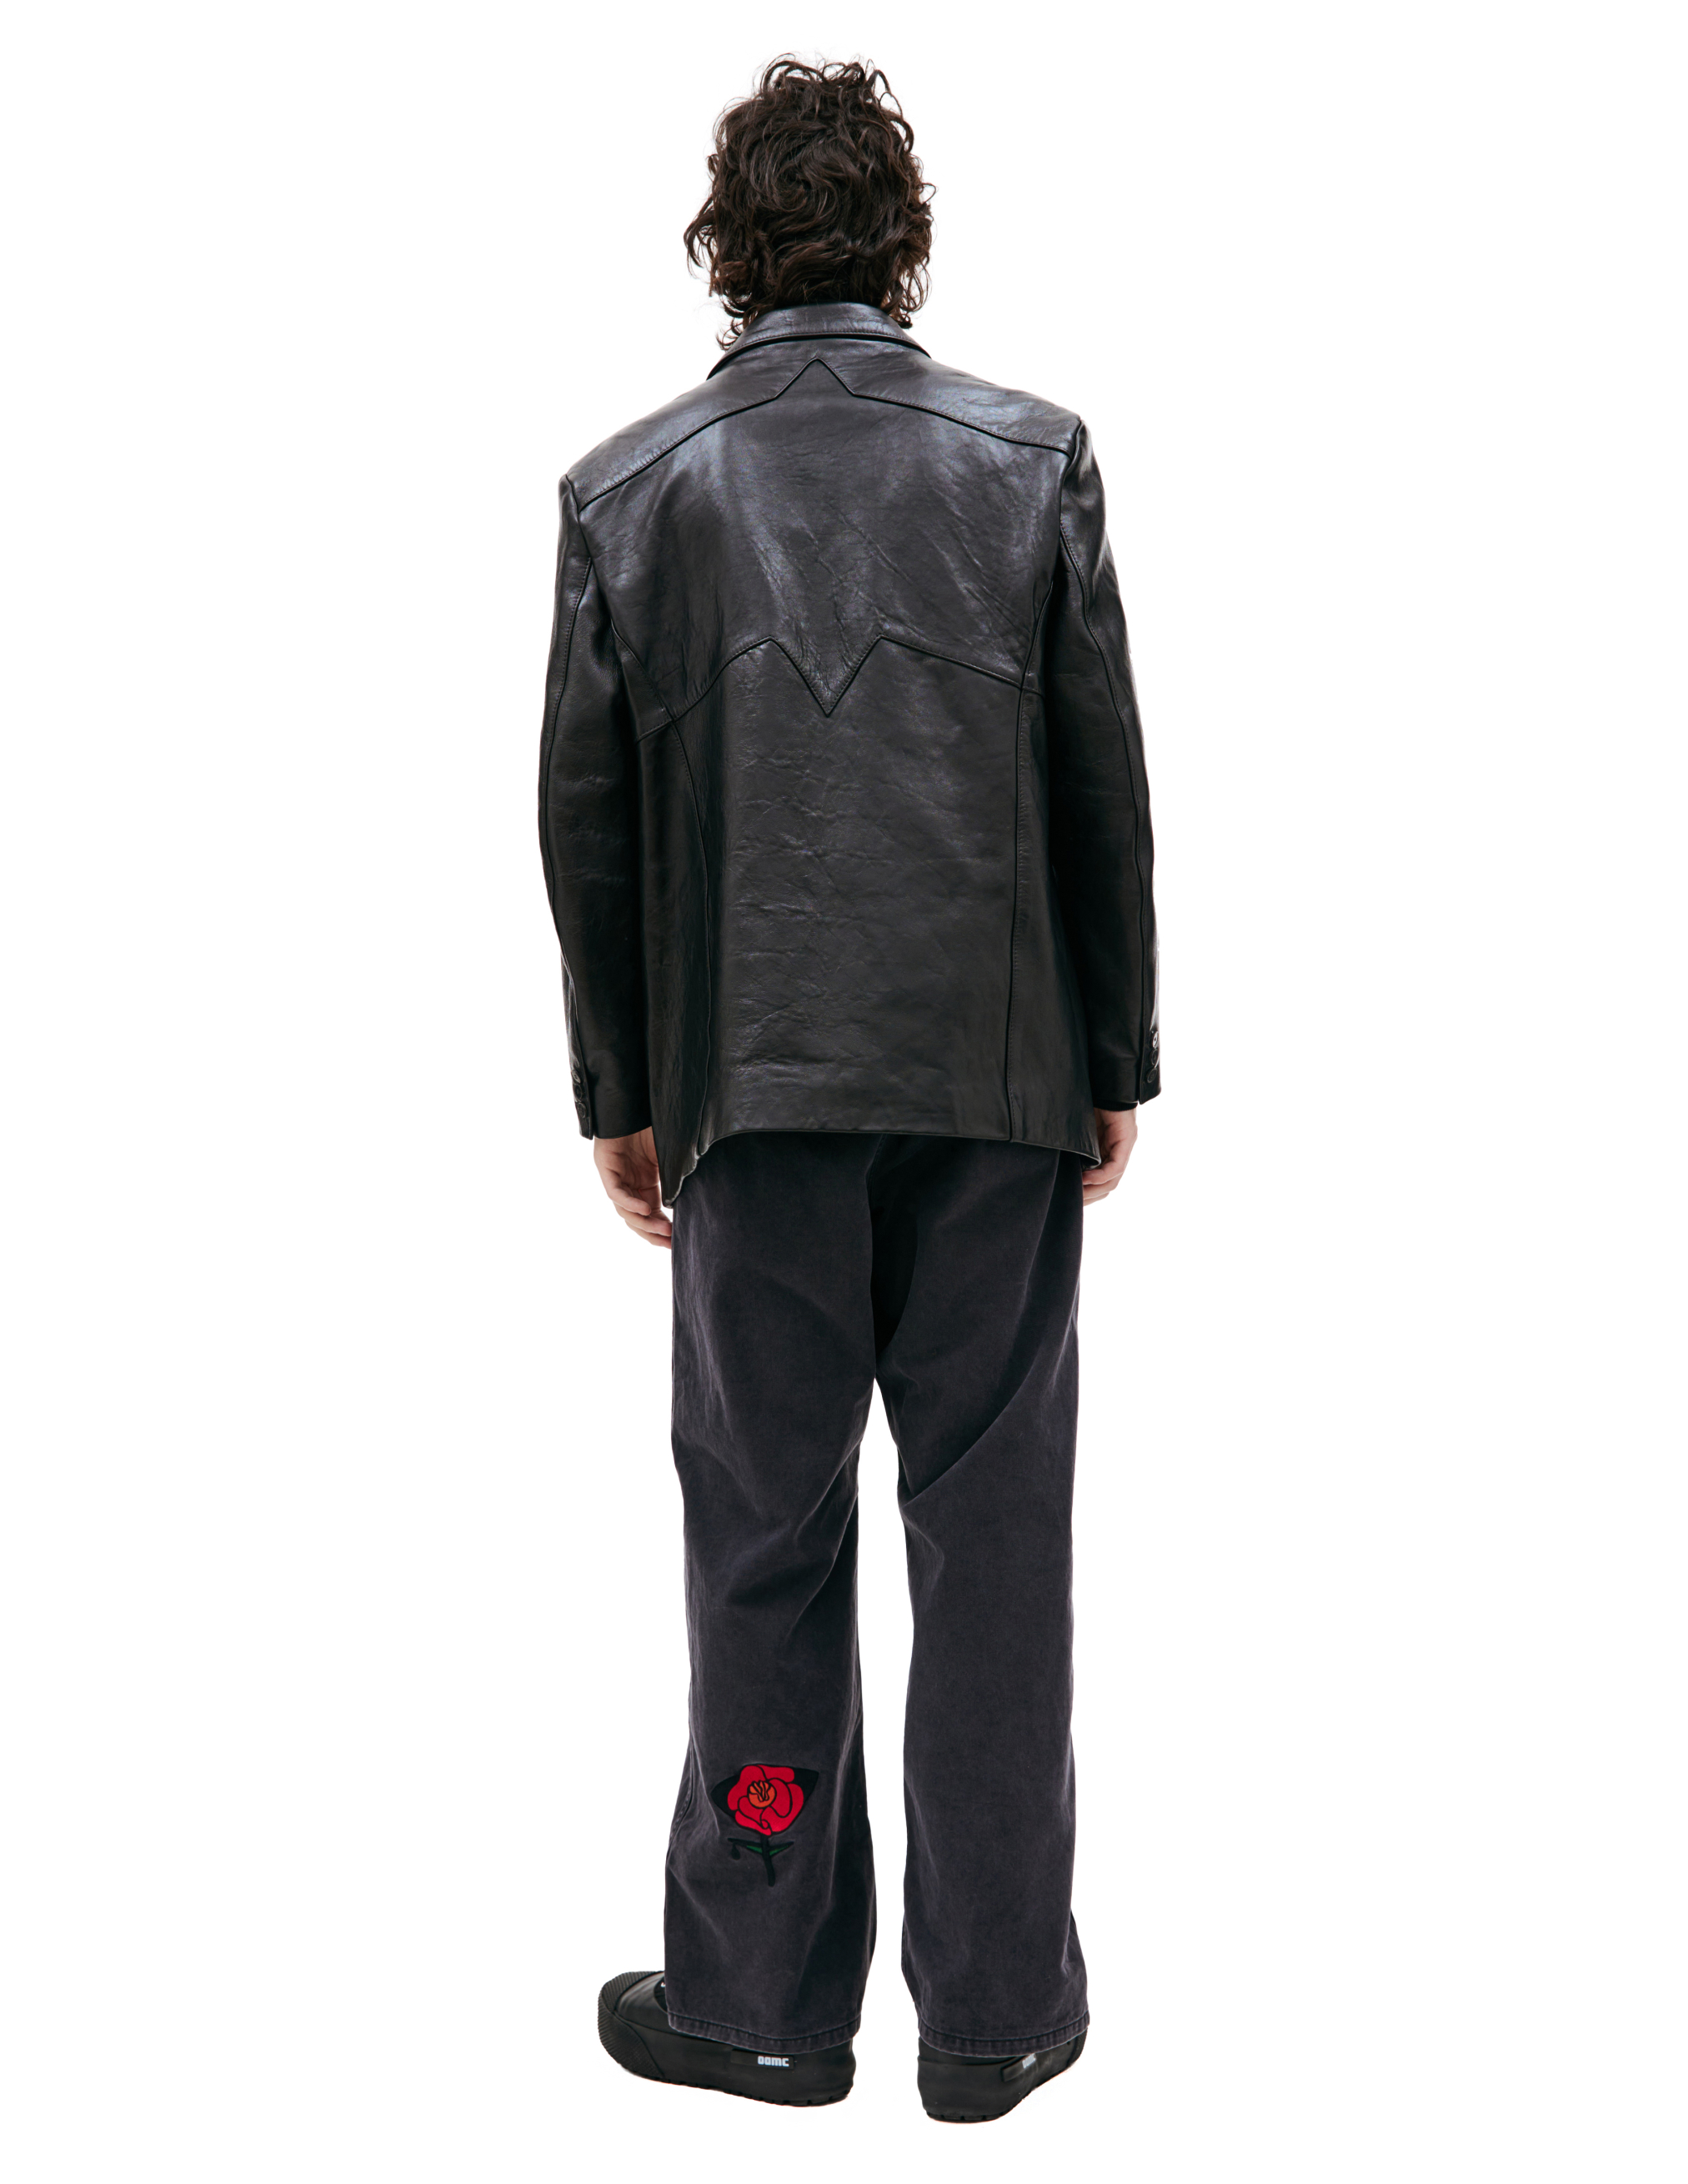 Черный кожаный пиджак Enfants Riches Deprimes 030-405, размер L;XL - фото 4